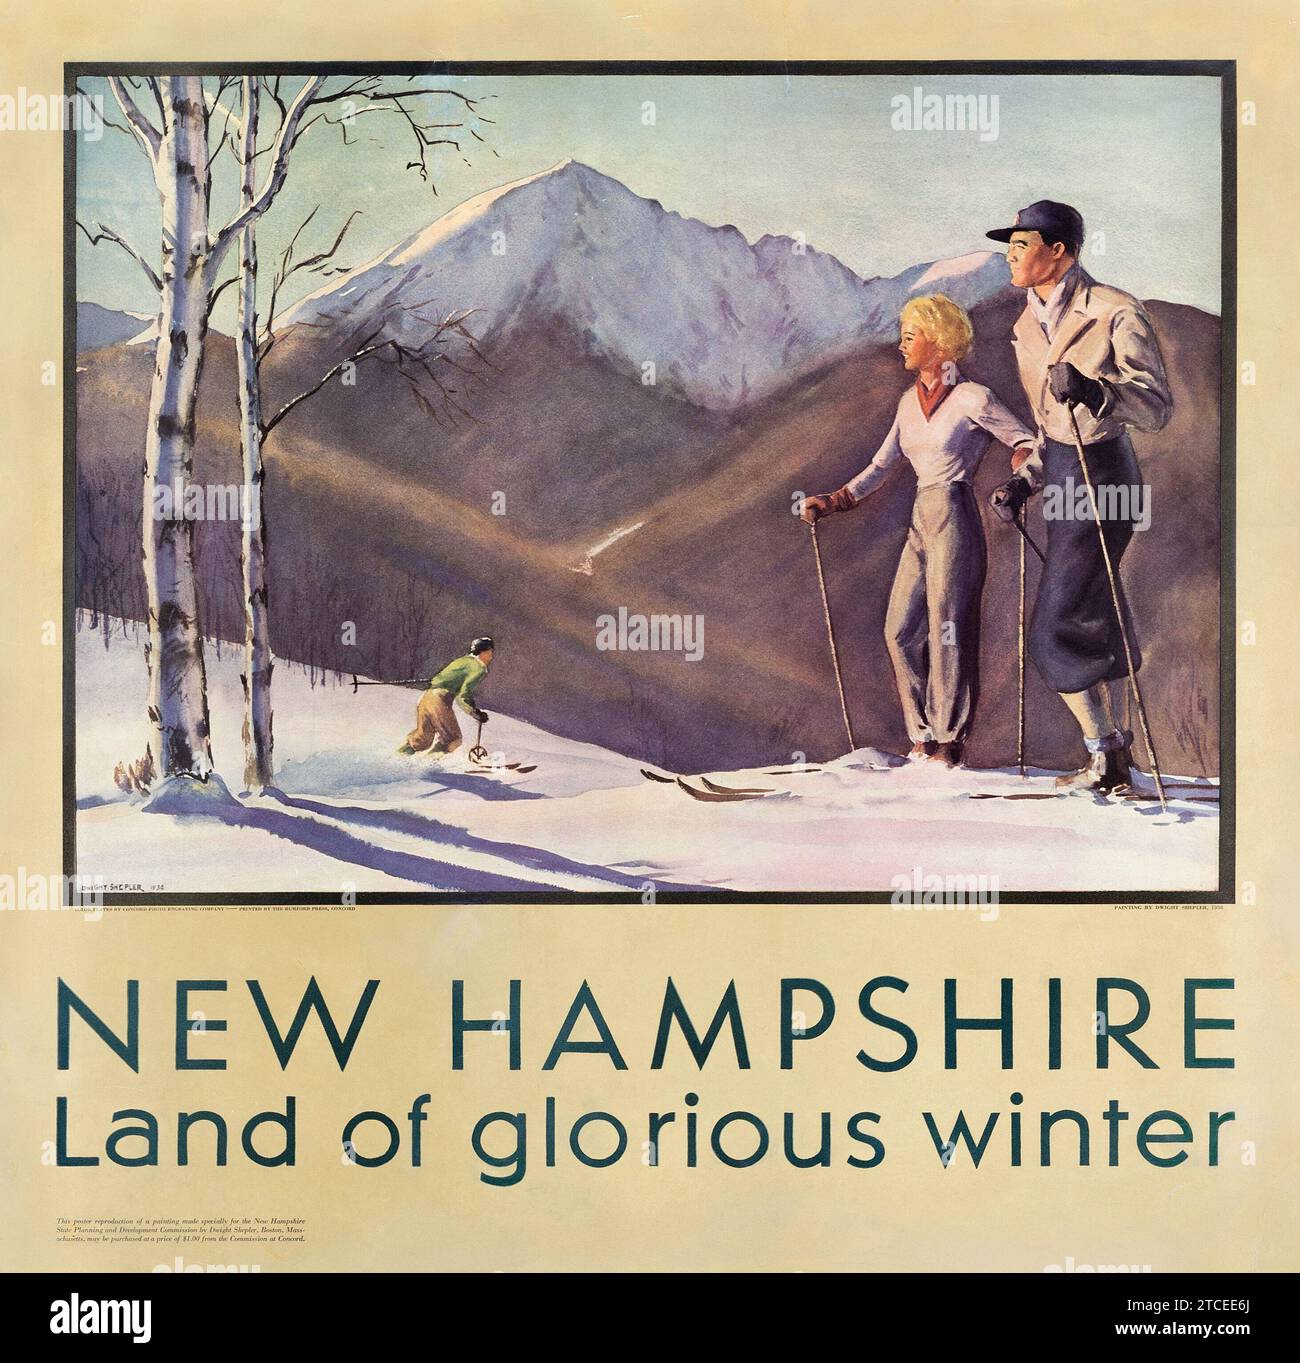 WINTERSPORT - amerikanisches Vintage-Reiseposter - New Hampshire, Land des glorreichen Winters (1936). Reiseplakat - Dwight Clark Shepler Kunstwerk ein Paar auf Skiern. Stockfoto